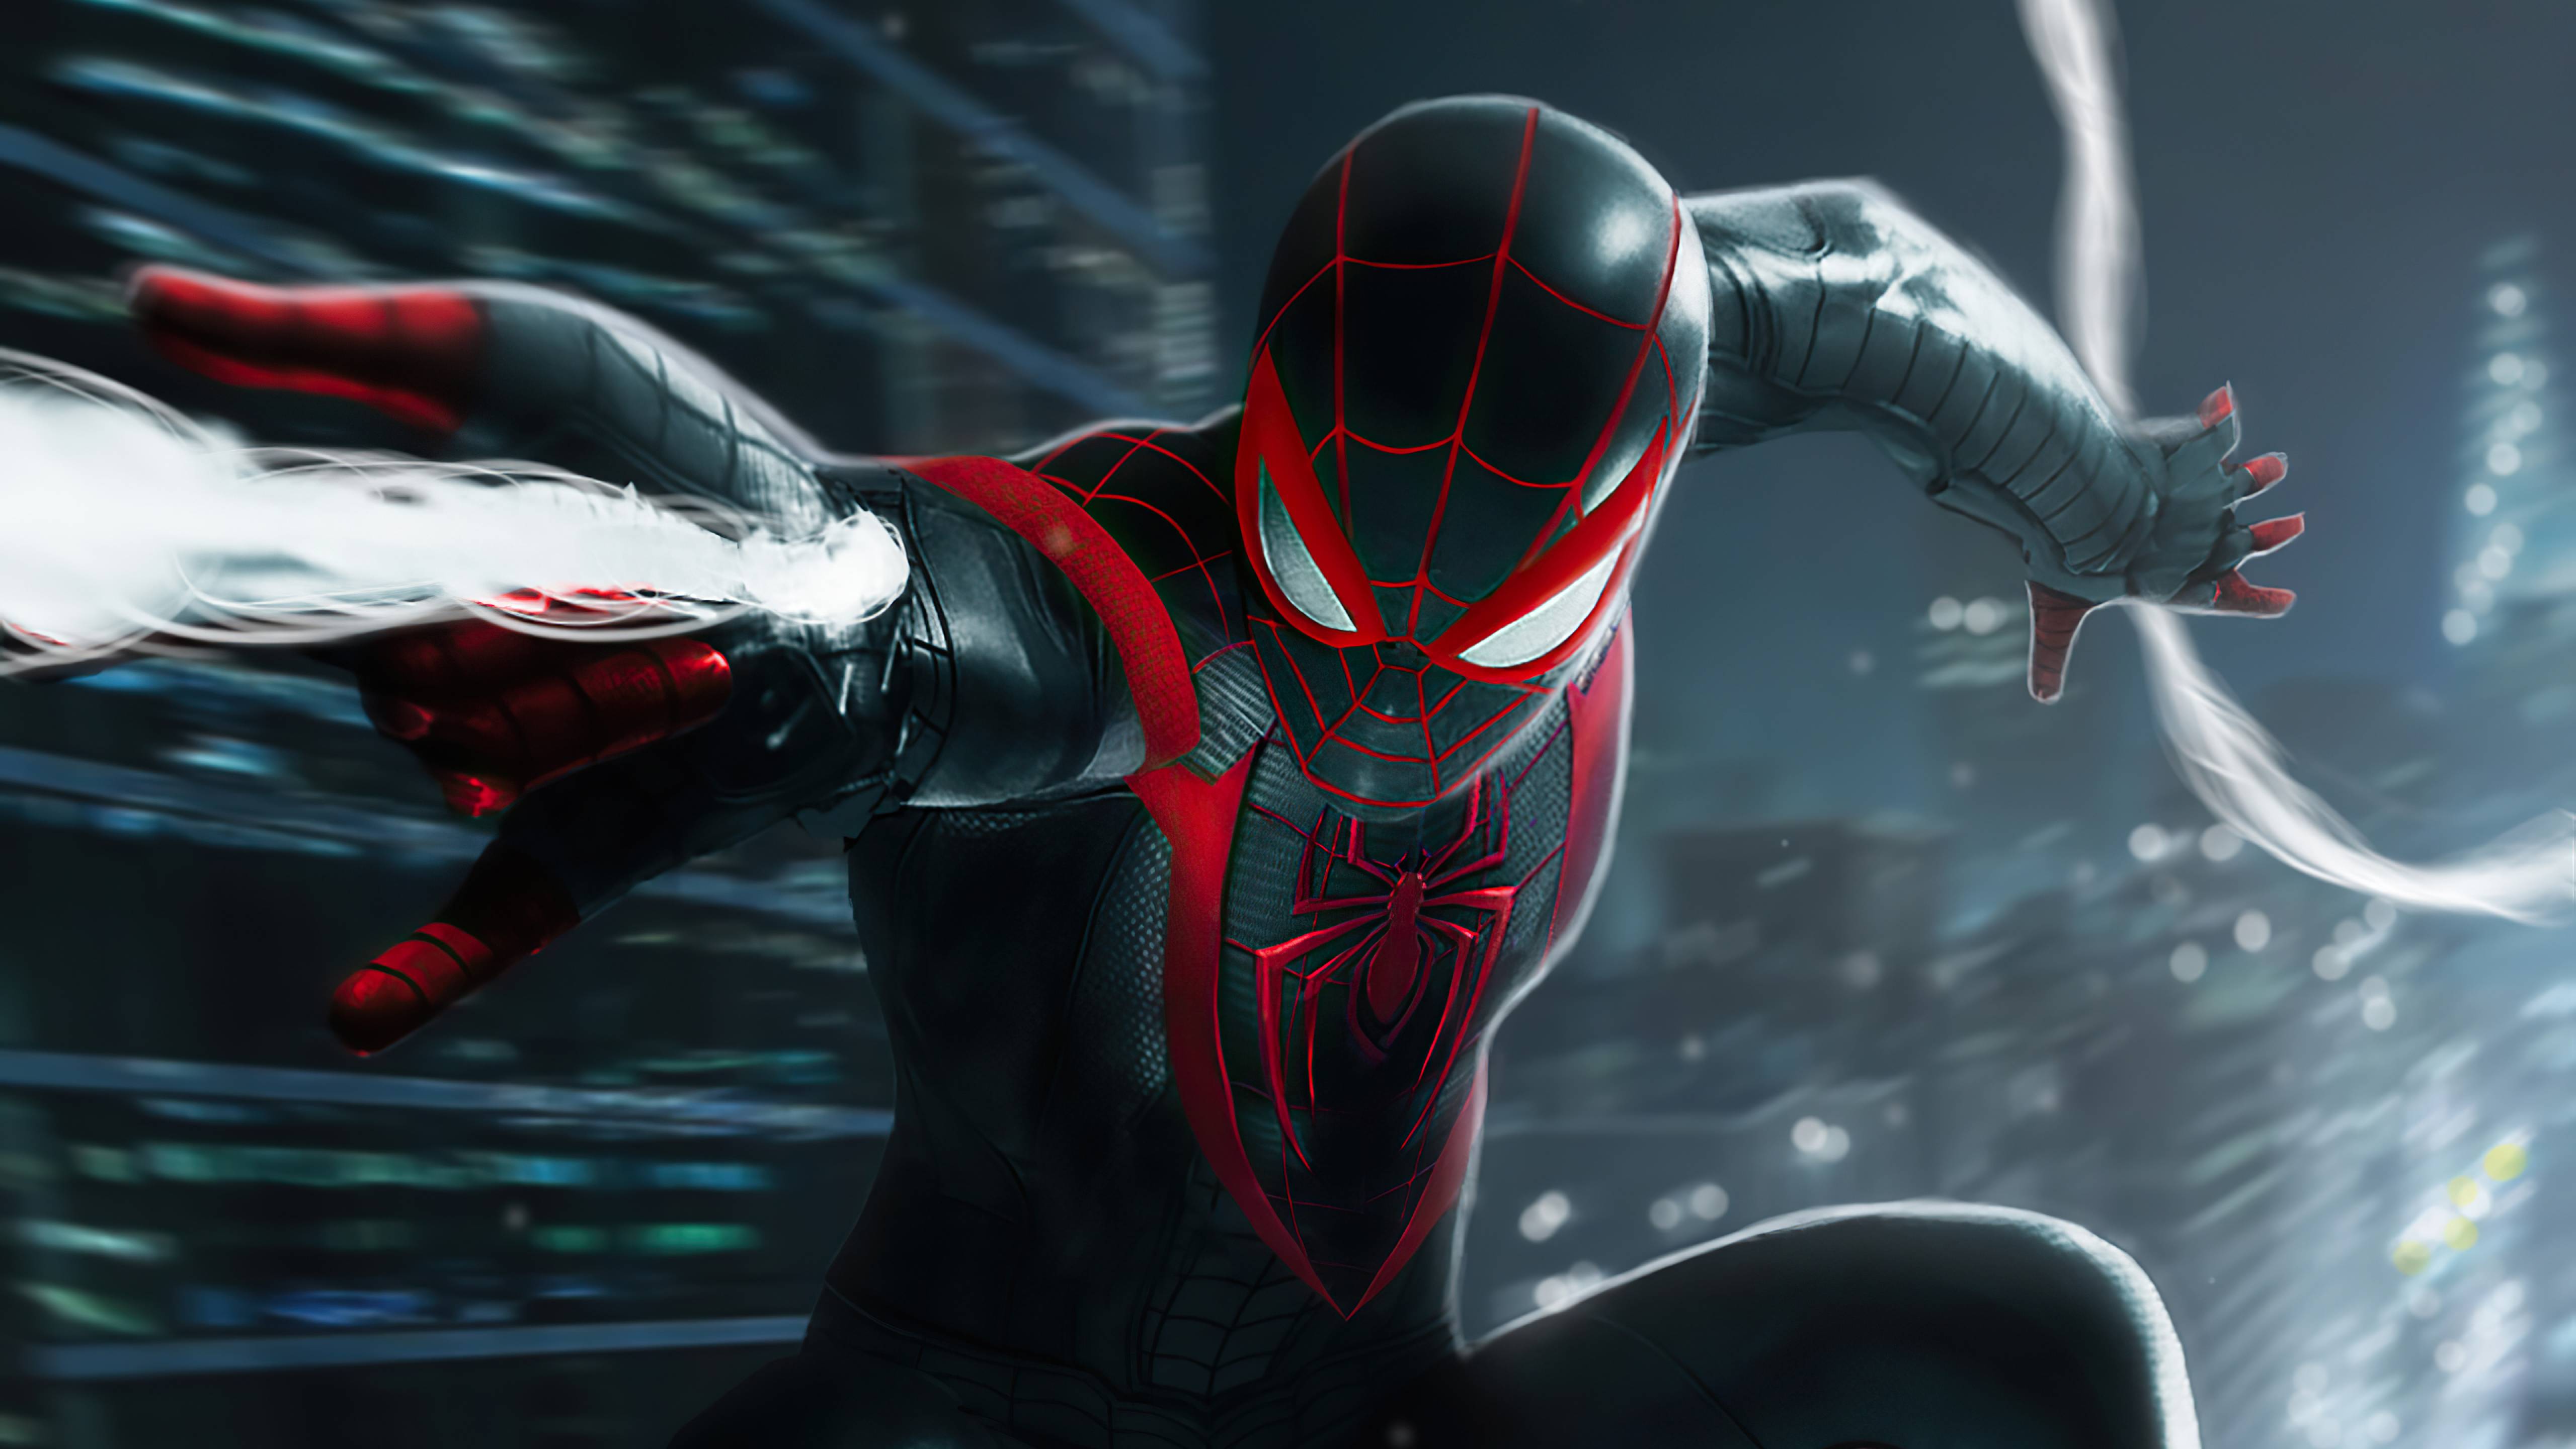 Những fan của Người Nhện, hãy nhanh chân tải về những bức hình nền Spider Man 5k miễn phí đầy sắc màu và năng lượng, hoàn toàn phù hợp cho các game thủ và fan của siêu anh hùng đặc biệt này.